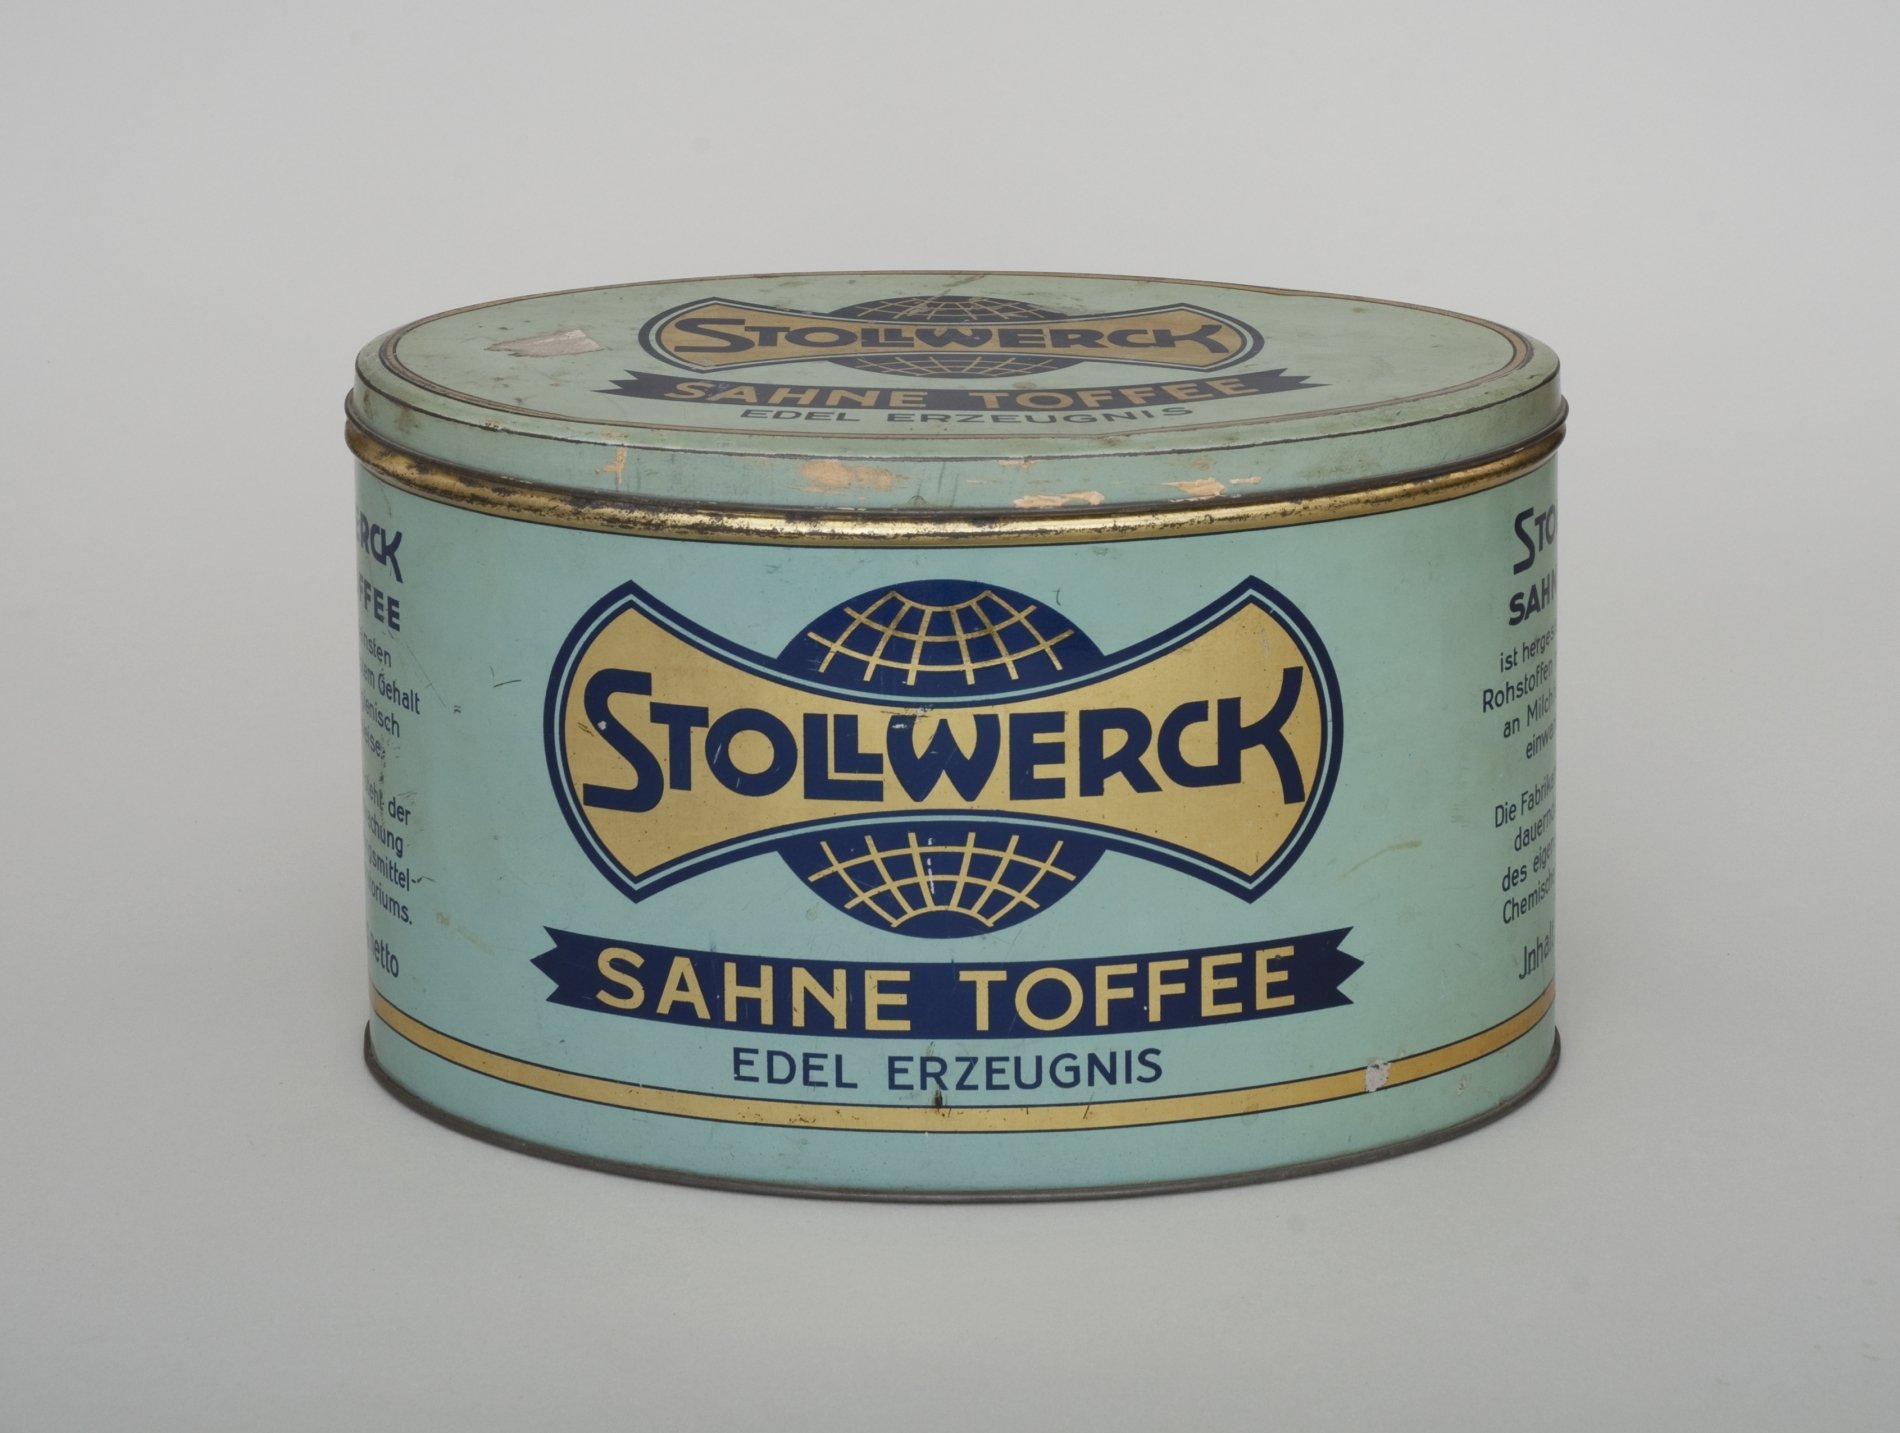 Bonbon-Dose "Stollwerck Sahne Toffee" (Stiftung Domäne Dahlem - Landgut und Museum, Weiternutzung nur mit Genehmigung des Museums CC BY-NC-SA)